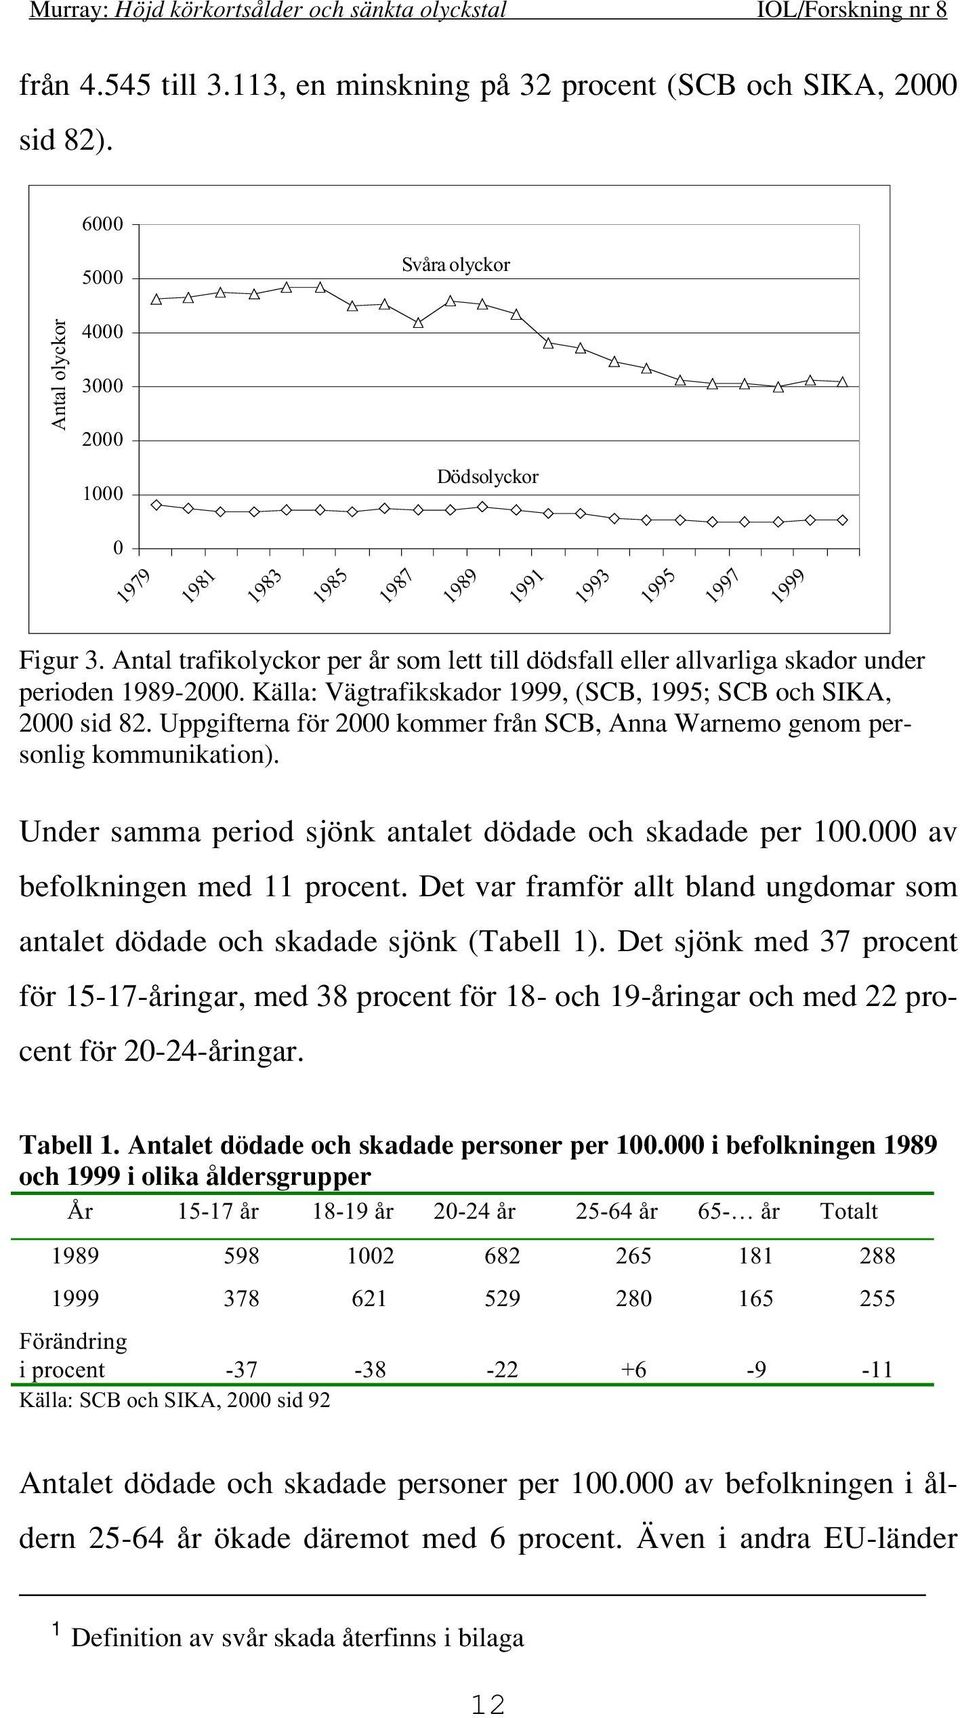 Antal trafikolyckor per år som lett till dödsfall eller allvarliga skador under perioden 1989-2000. Källa: Vägtrafikskador 1999, (SCB, 1995; SCB och SIKA, 2000 sid 82.